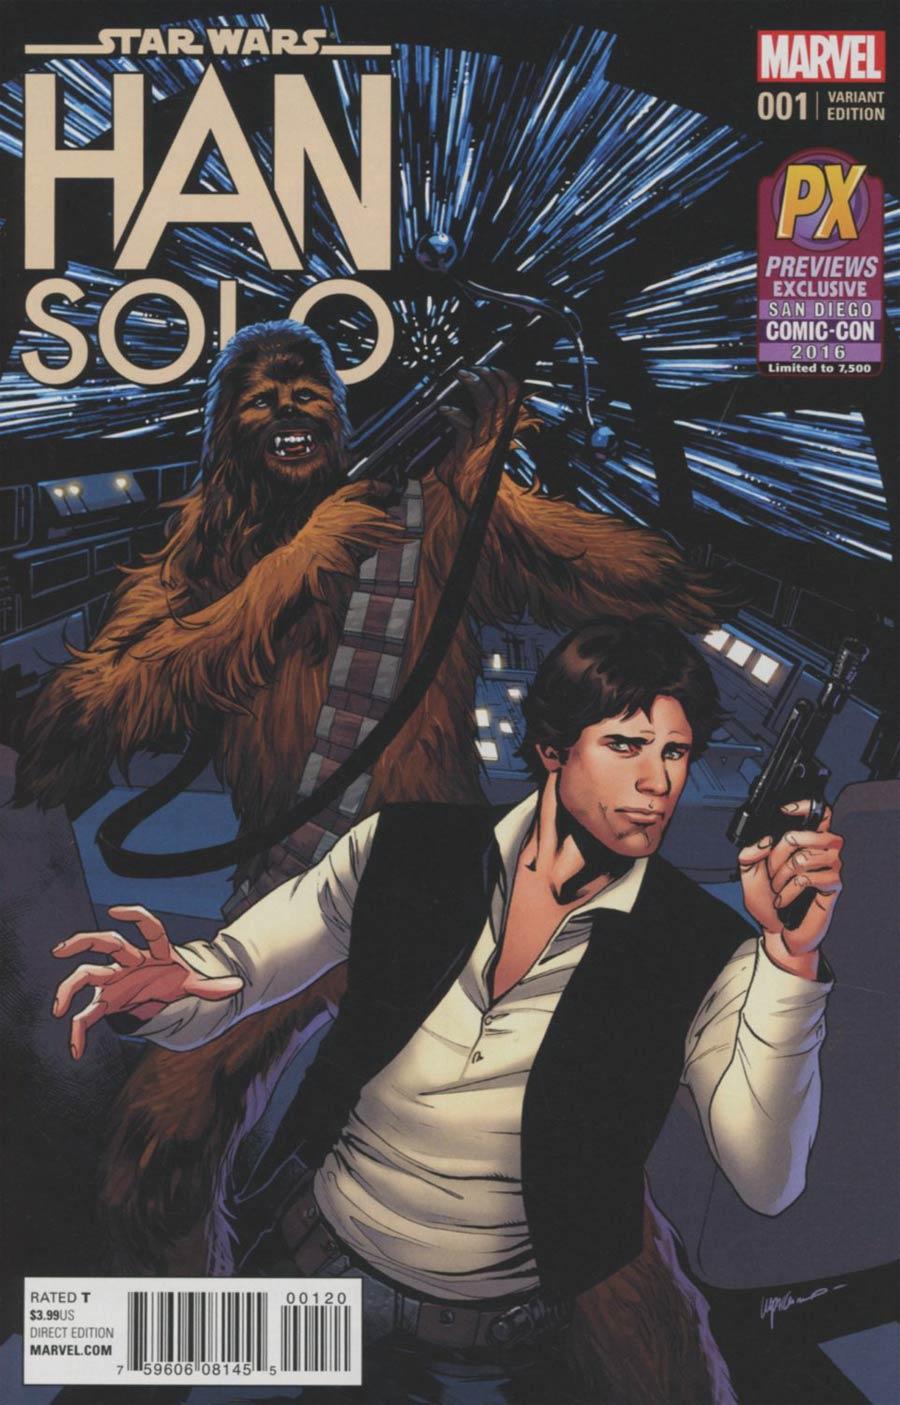 Star Wars Han Solo Vol. 1 #1